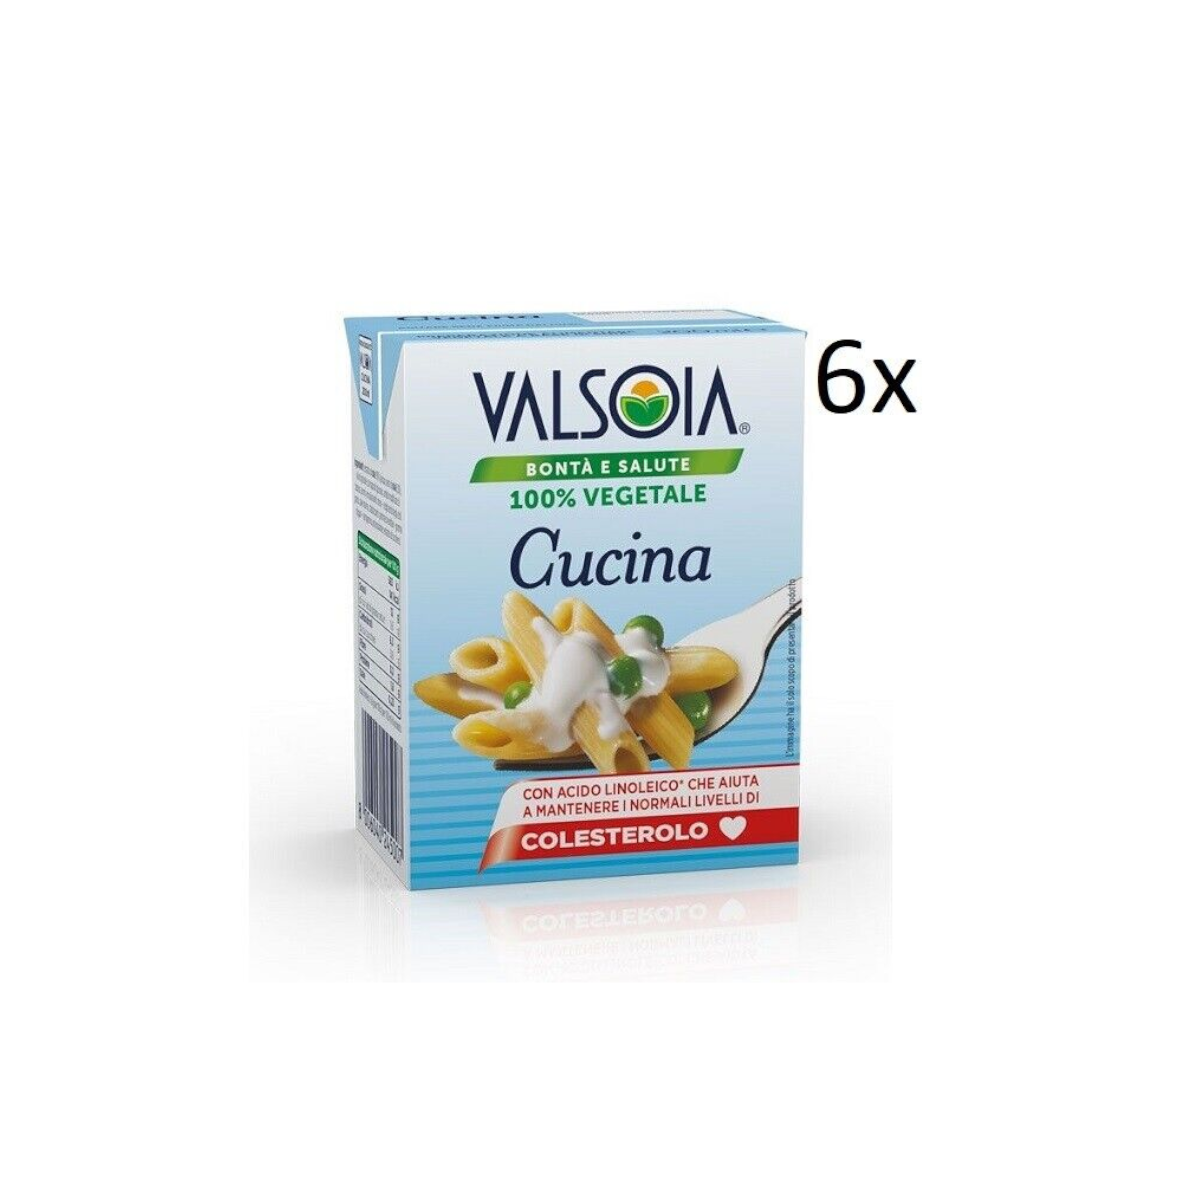 6x Valsoia Panna Cucina 100% Vegetale Zubereitung auf Sojabasis Kochsahne 200ml